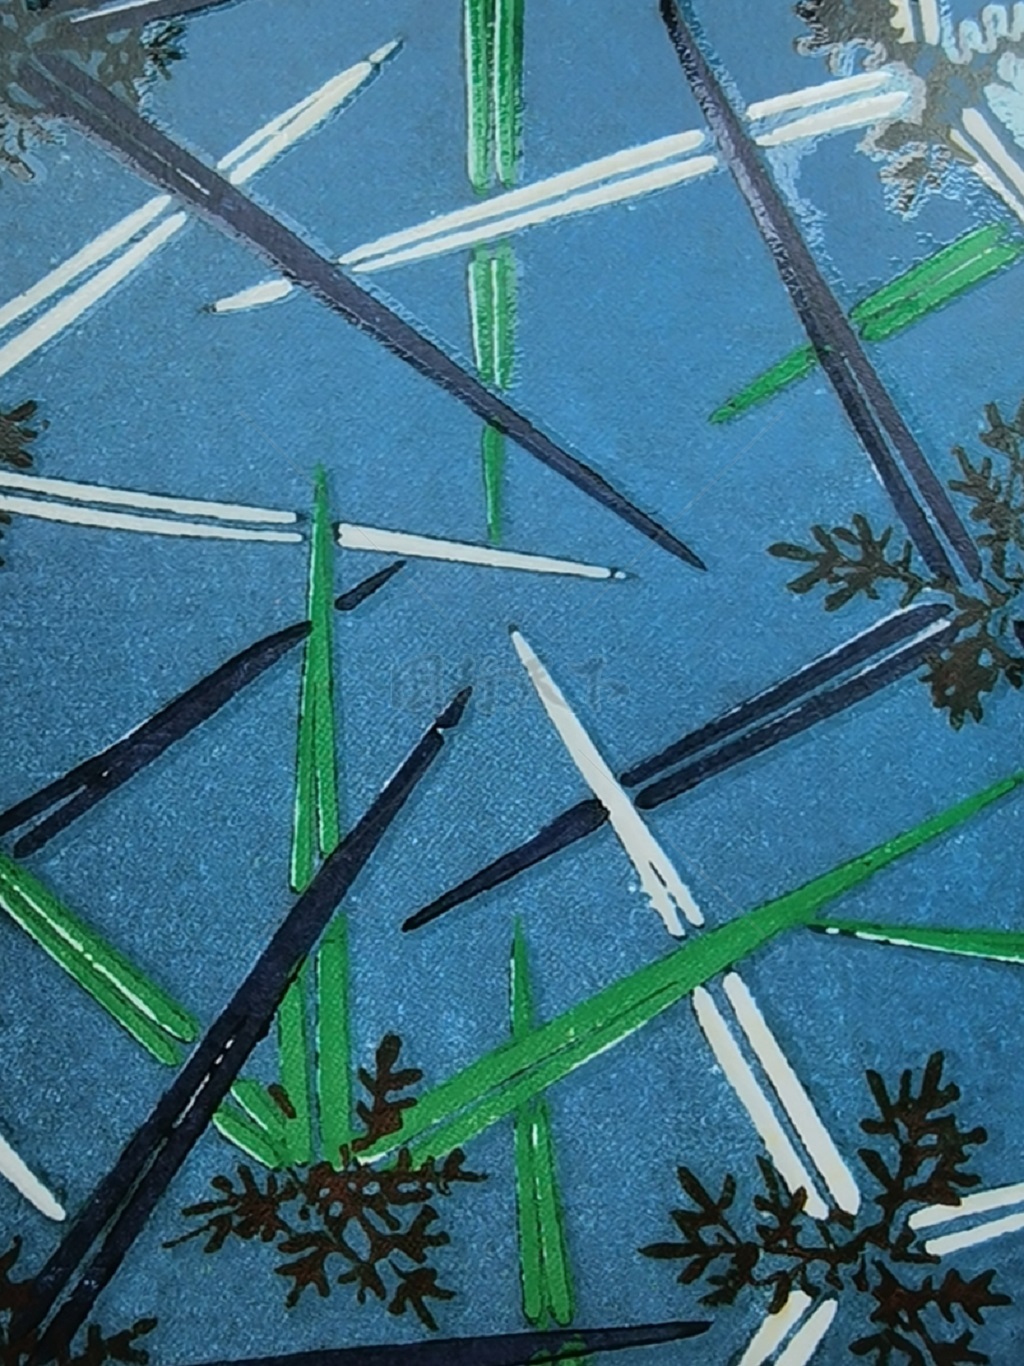  水彩手绘  抽象花卉草木 底图底纹  图案背景贴图